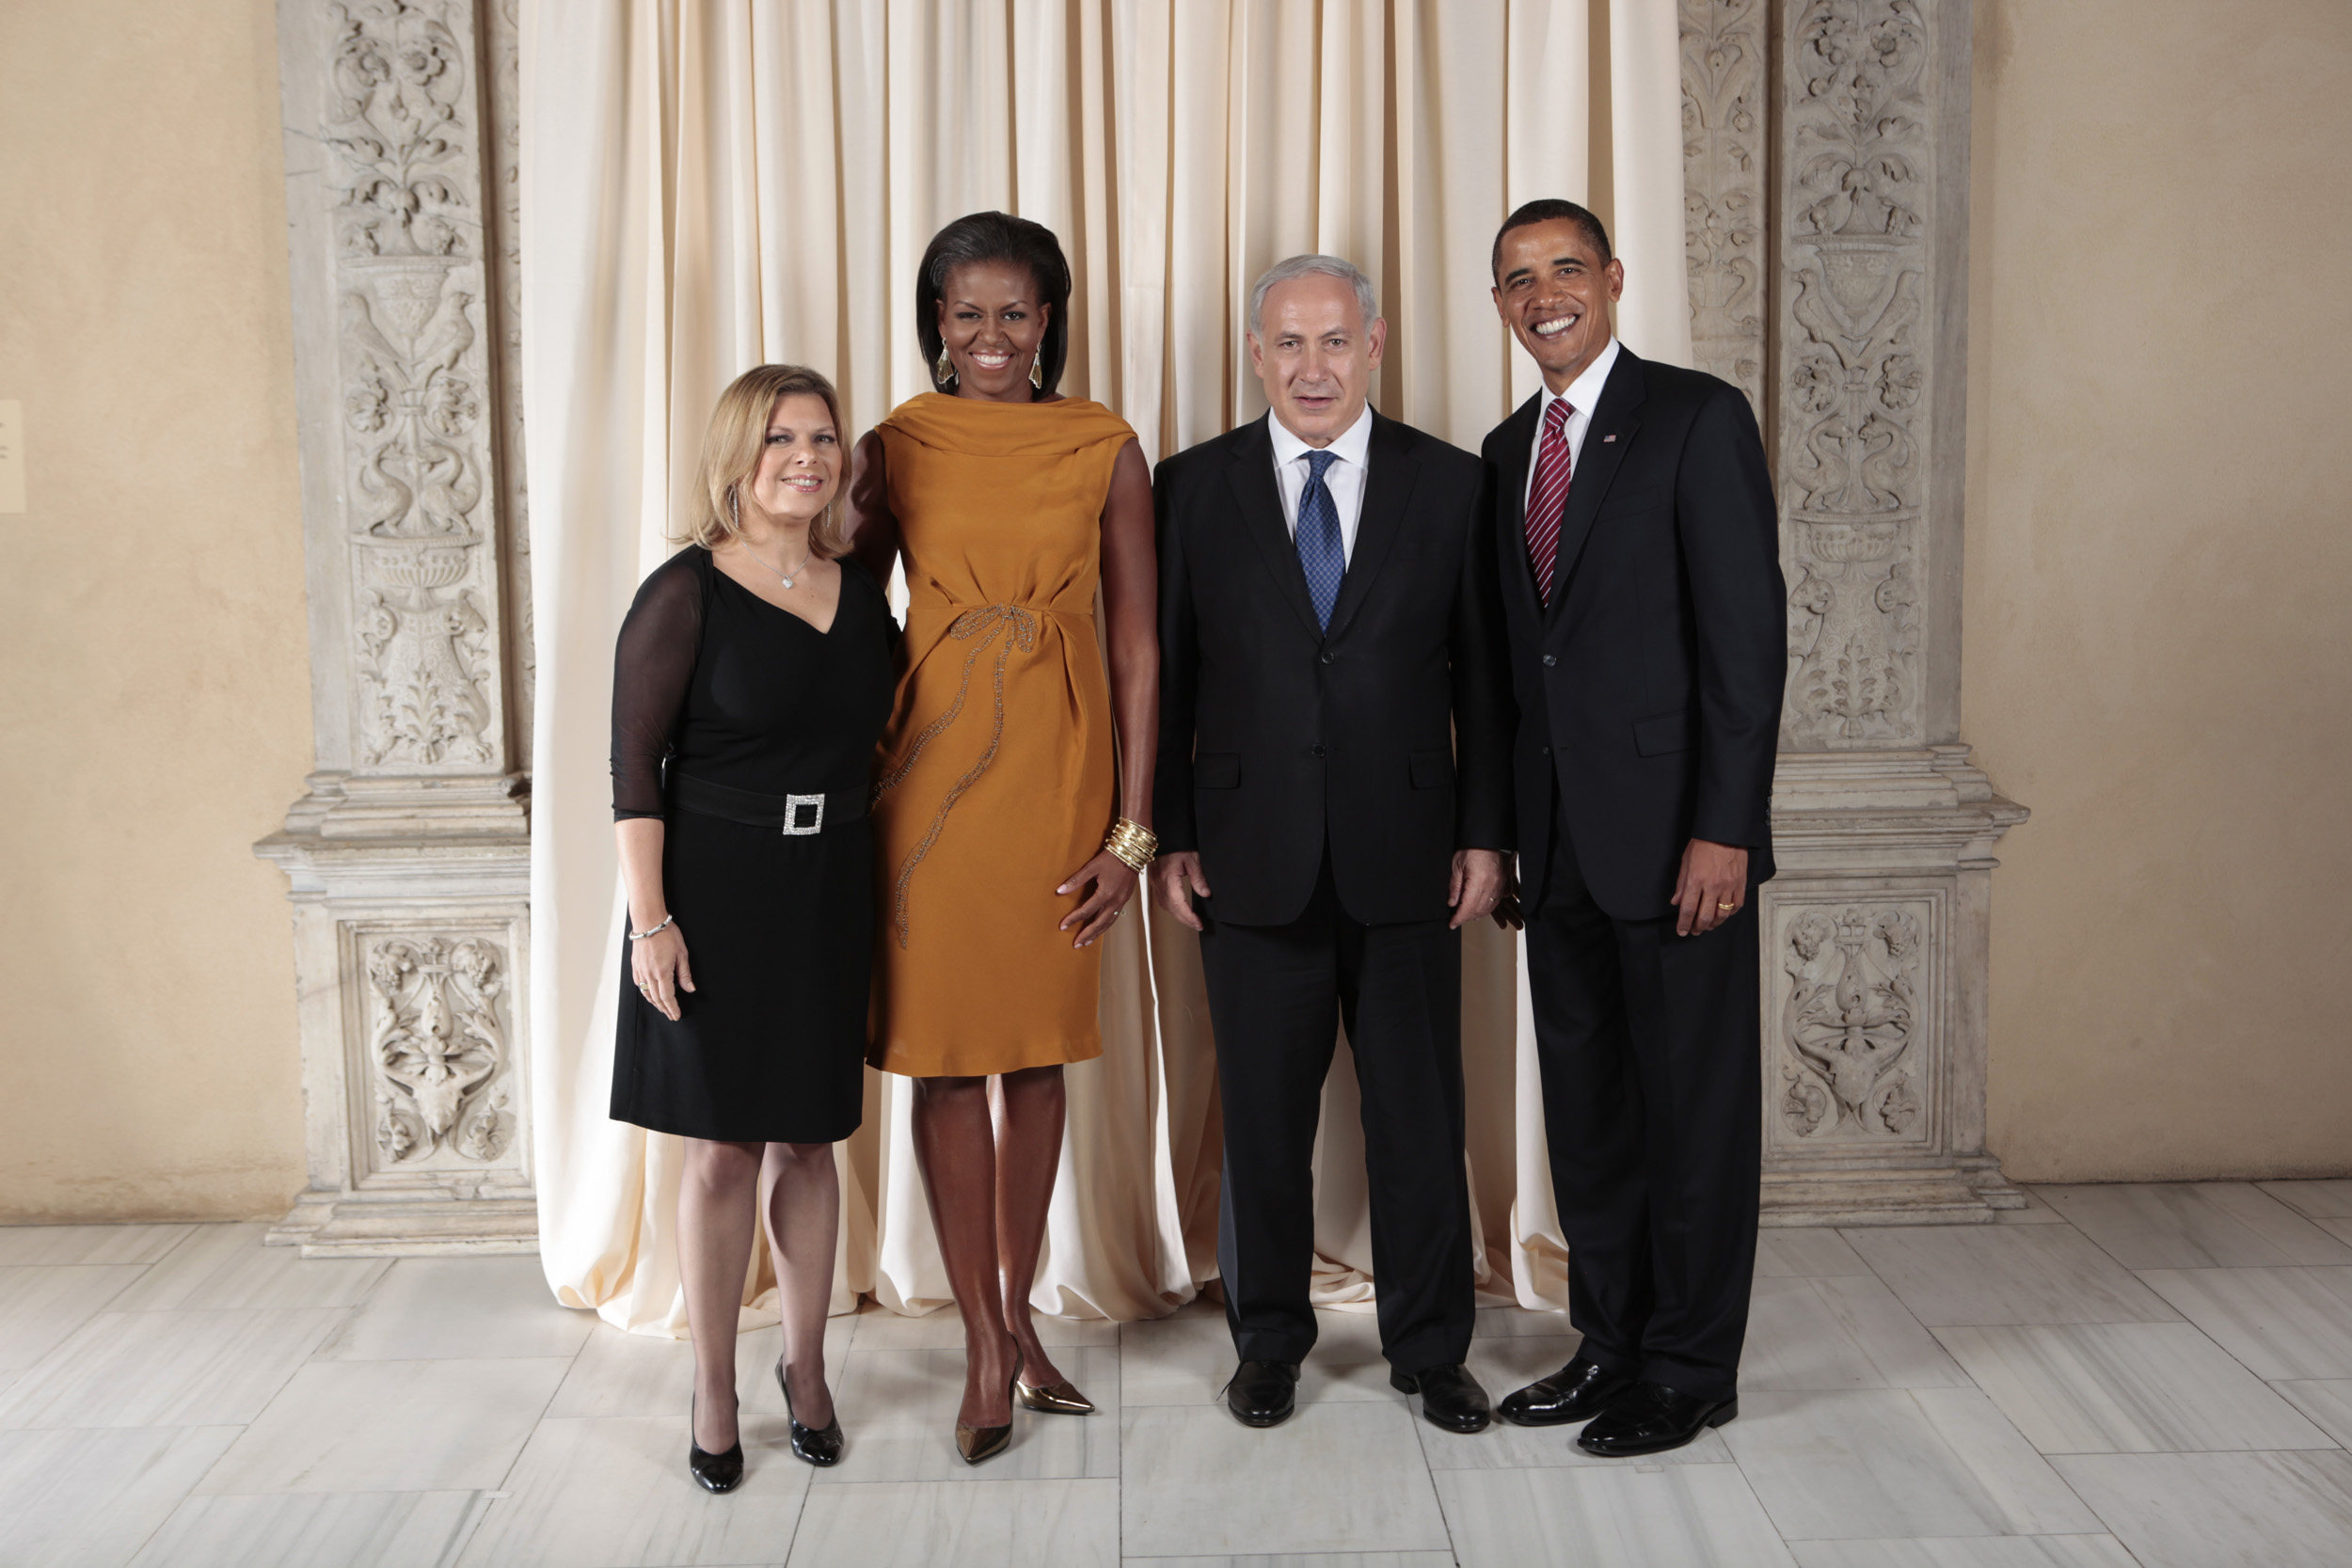 ที่มาภาพ : http://upload.wikimedia.org/wikipedia/commons/4/4d/Benjamin_Netanyahu_with_Obamas.jpg